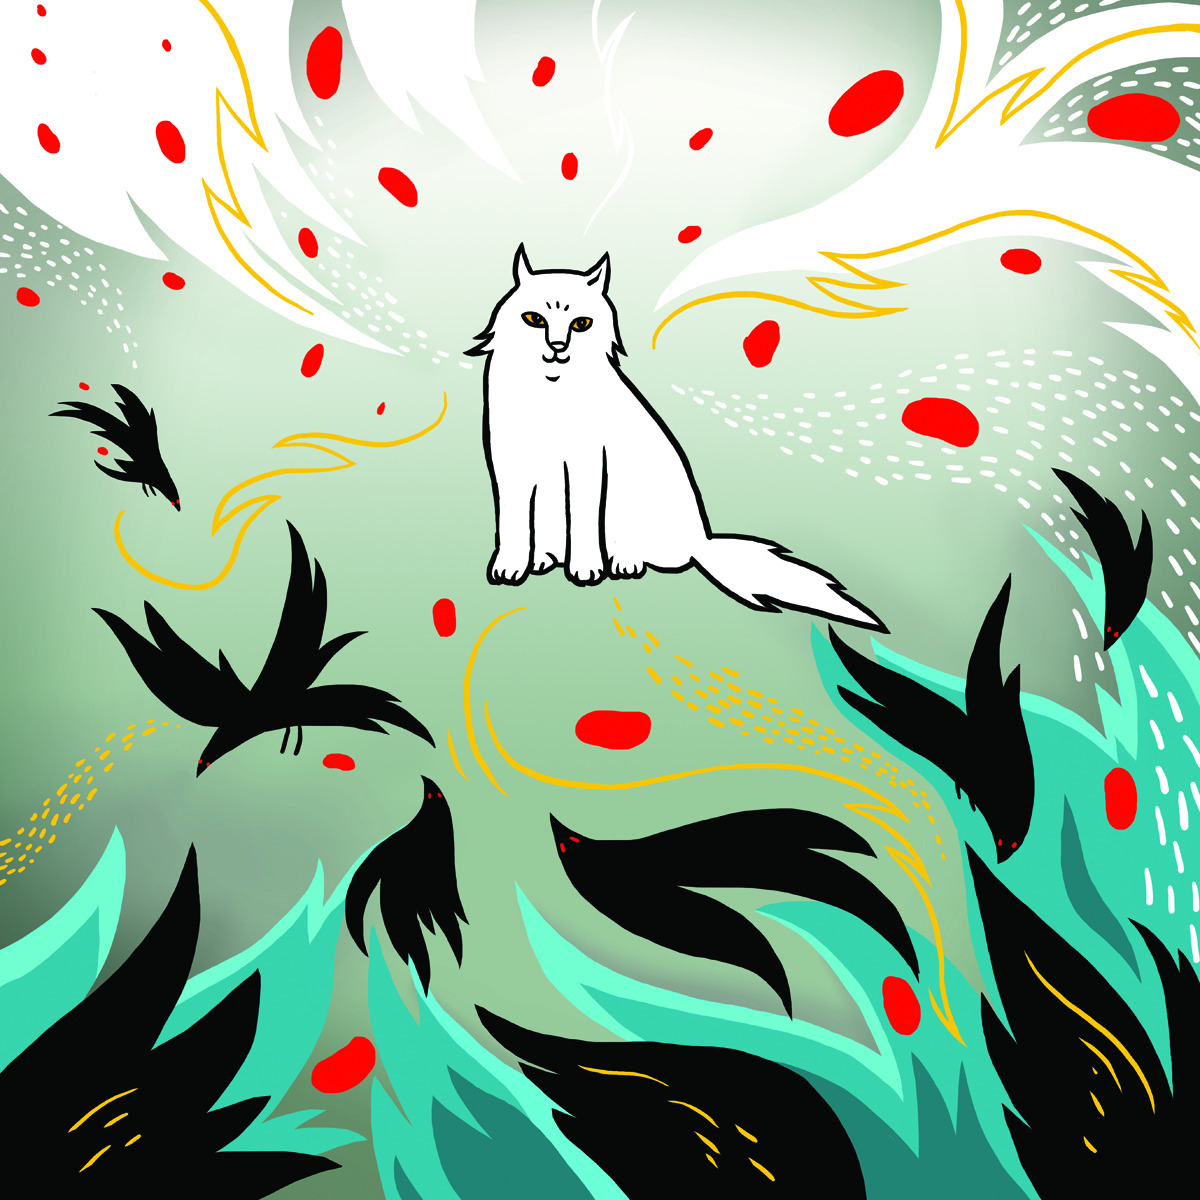  Белых котиков море (и блиц-опрос) 